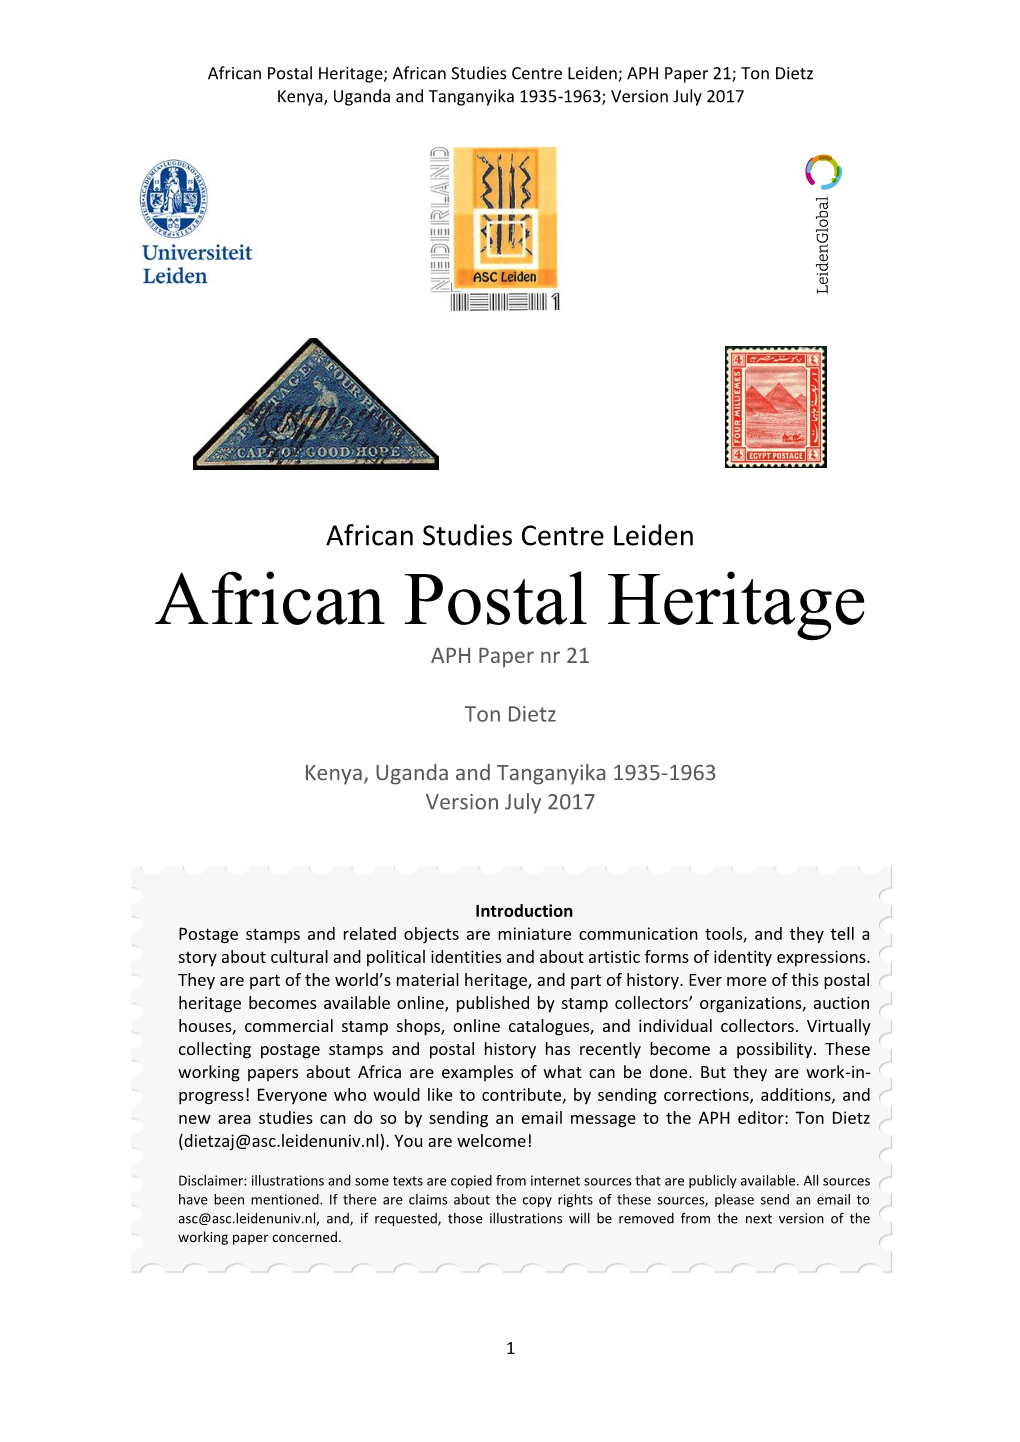 African Postal Heritage; African Studies Centre Leiden; APH Paper 21; Ton Dietz Kenya, Uganda and Tanganyika 1935-1963; Version July 2017